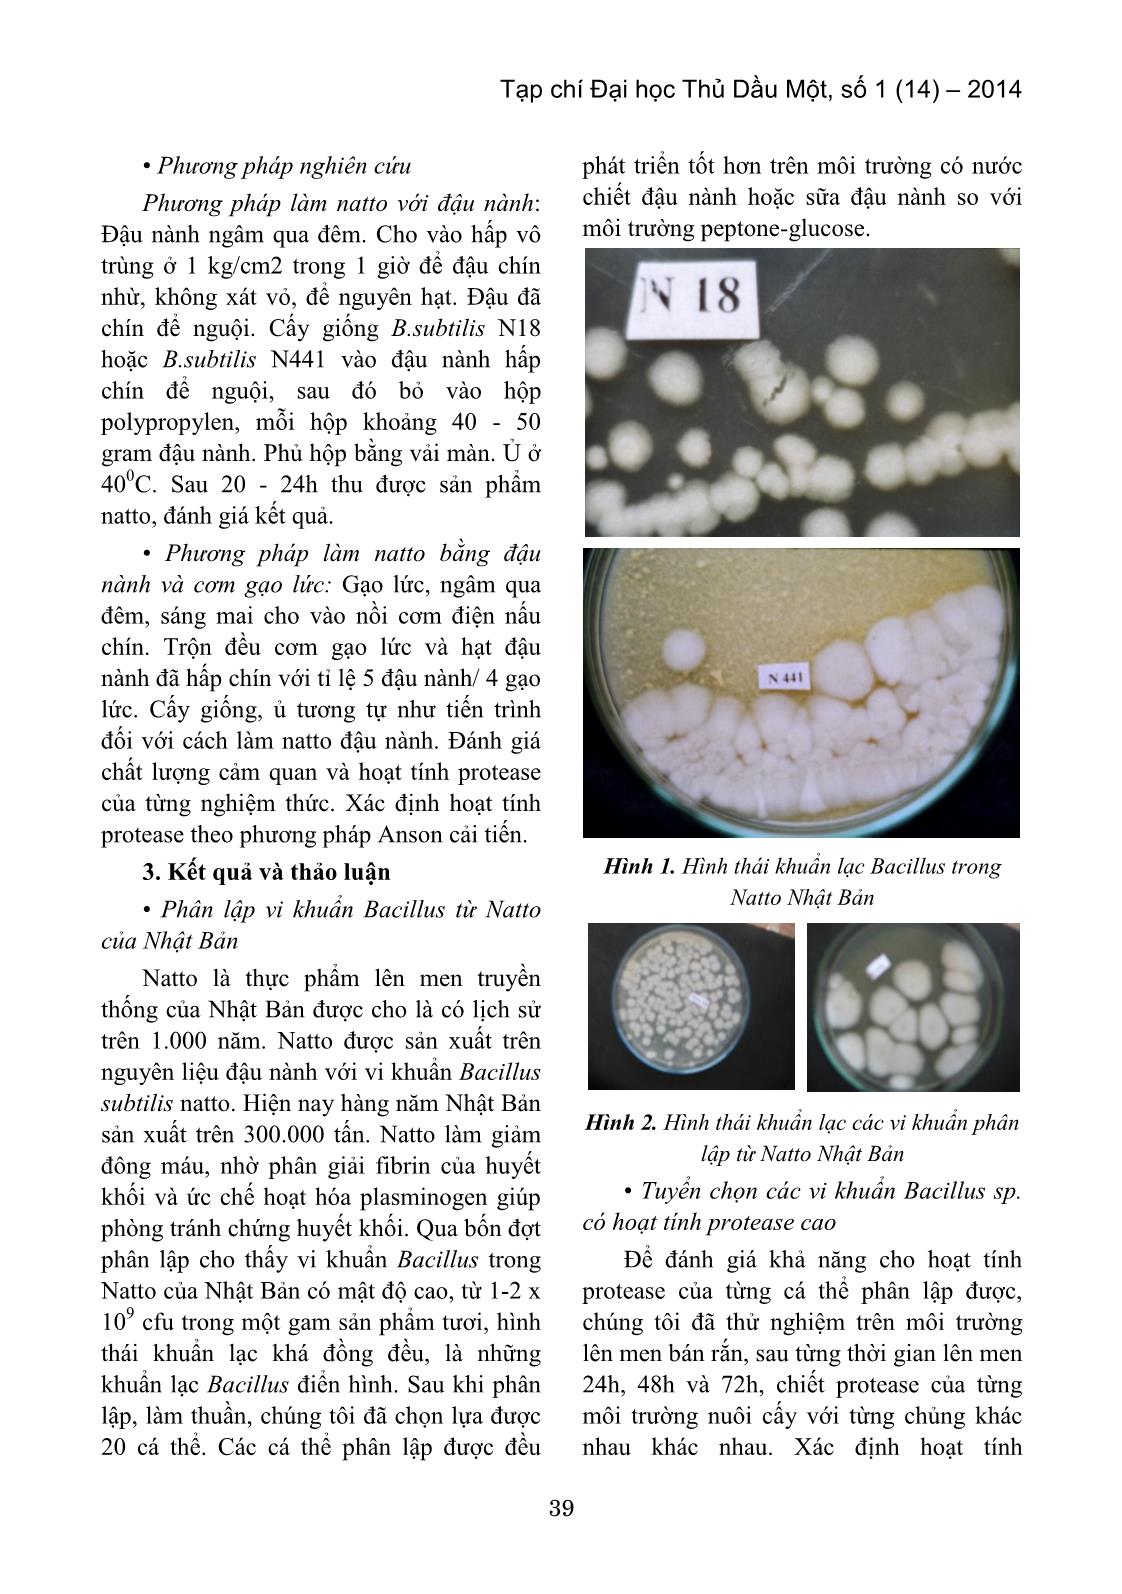 Phân lập vi khuẩn Bacillus Subtilis từ Natto Nhật Bản làm giống sản xuất Natto trang 2